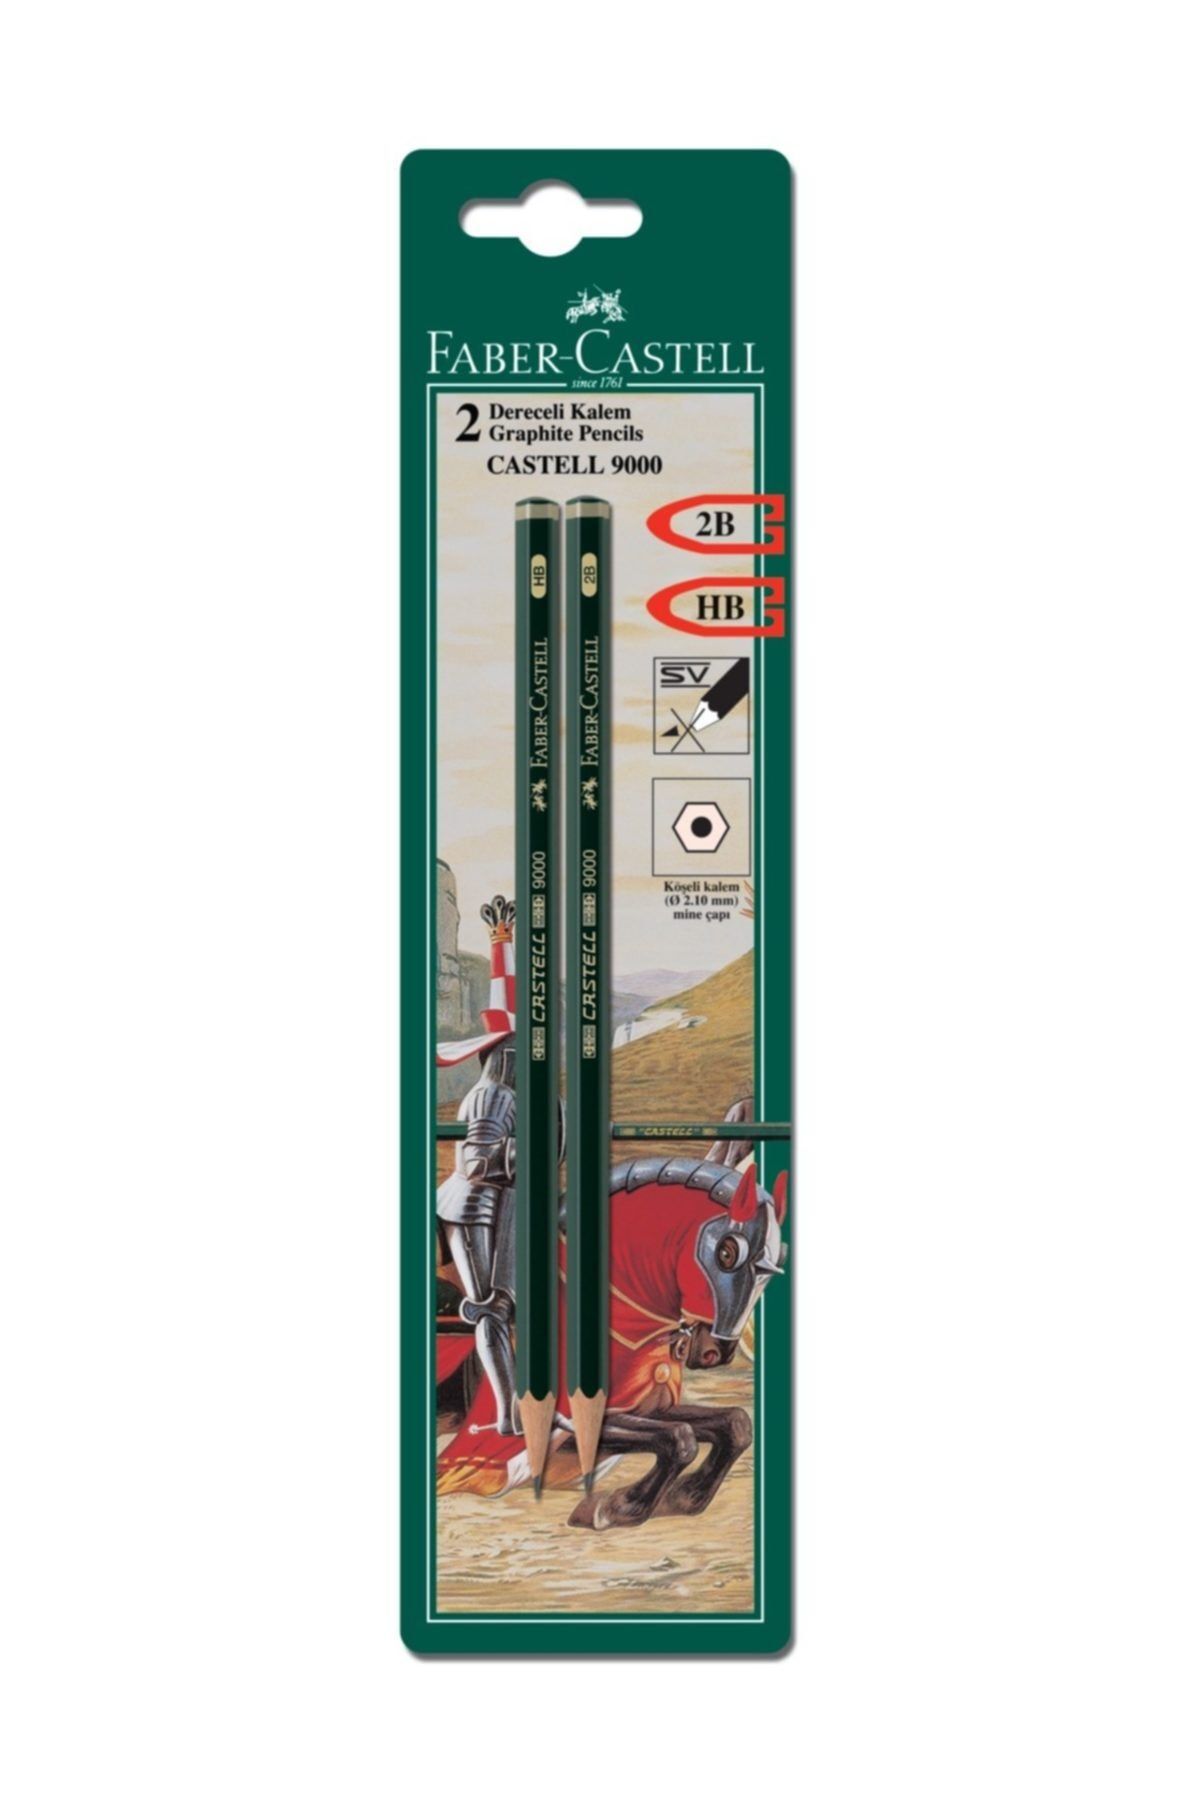 Faber Castell Bls. Castell 9000 Dereceli Kurşunkalem 2b-hb, 2'li